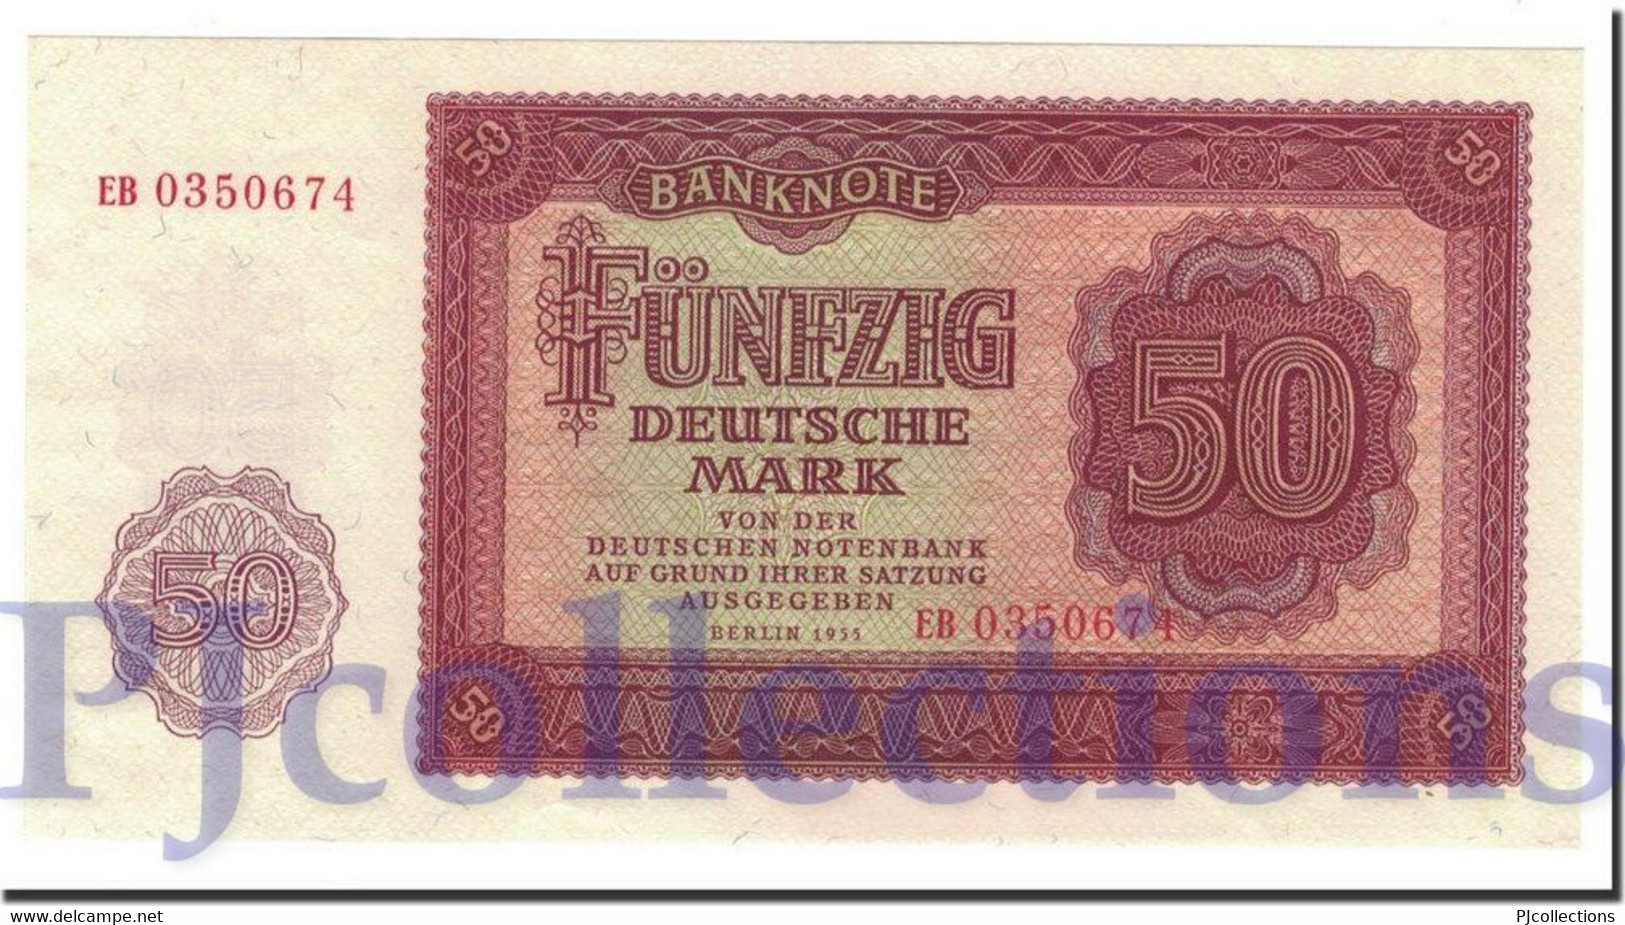 GERMANY DEMOCRATIC REPUBLIC 50 DEUTSHEMARK 1955 PICK 20a UNC - 50 Deutsche Mark